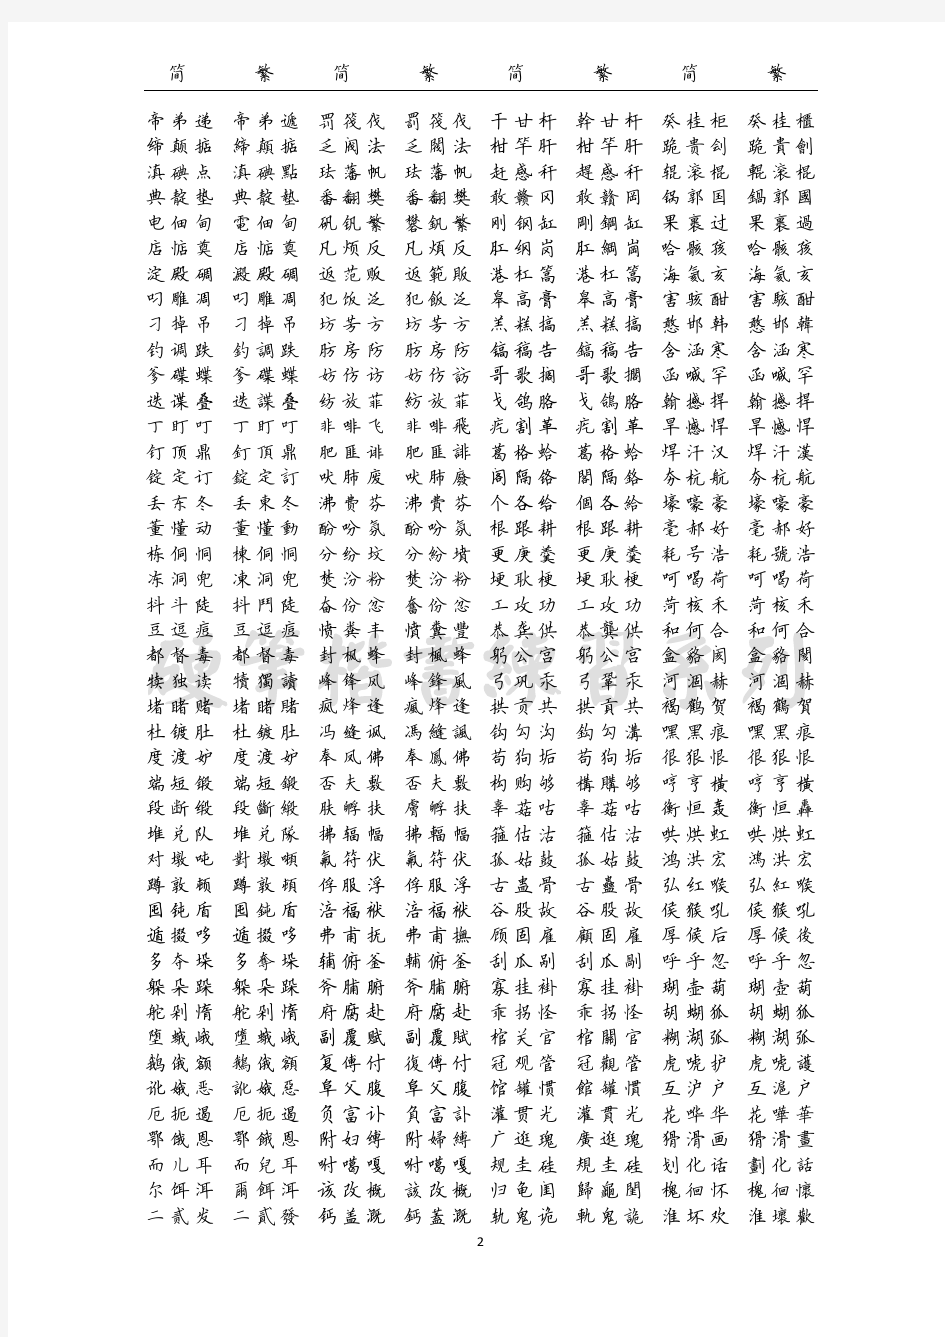 3500个常用汉字硬笔书法繁简对照表(精心整理制作)